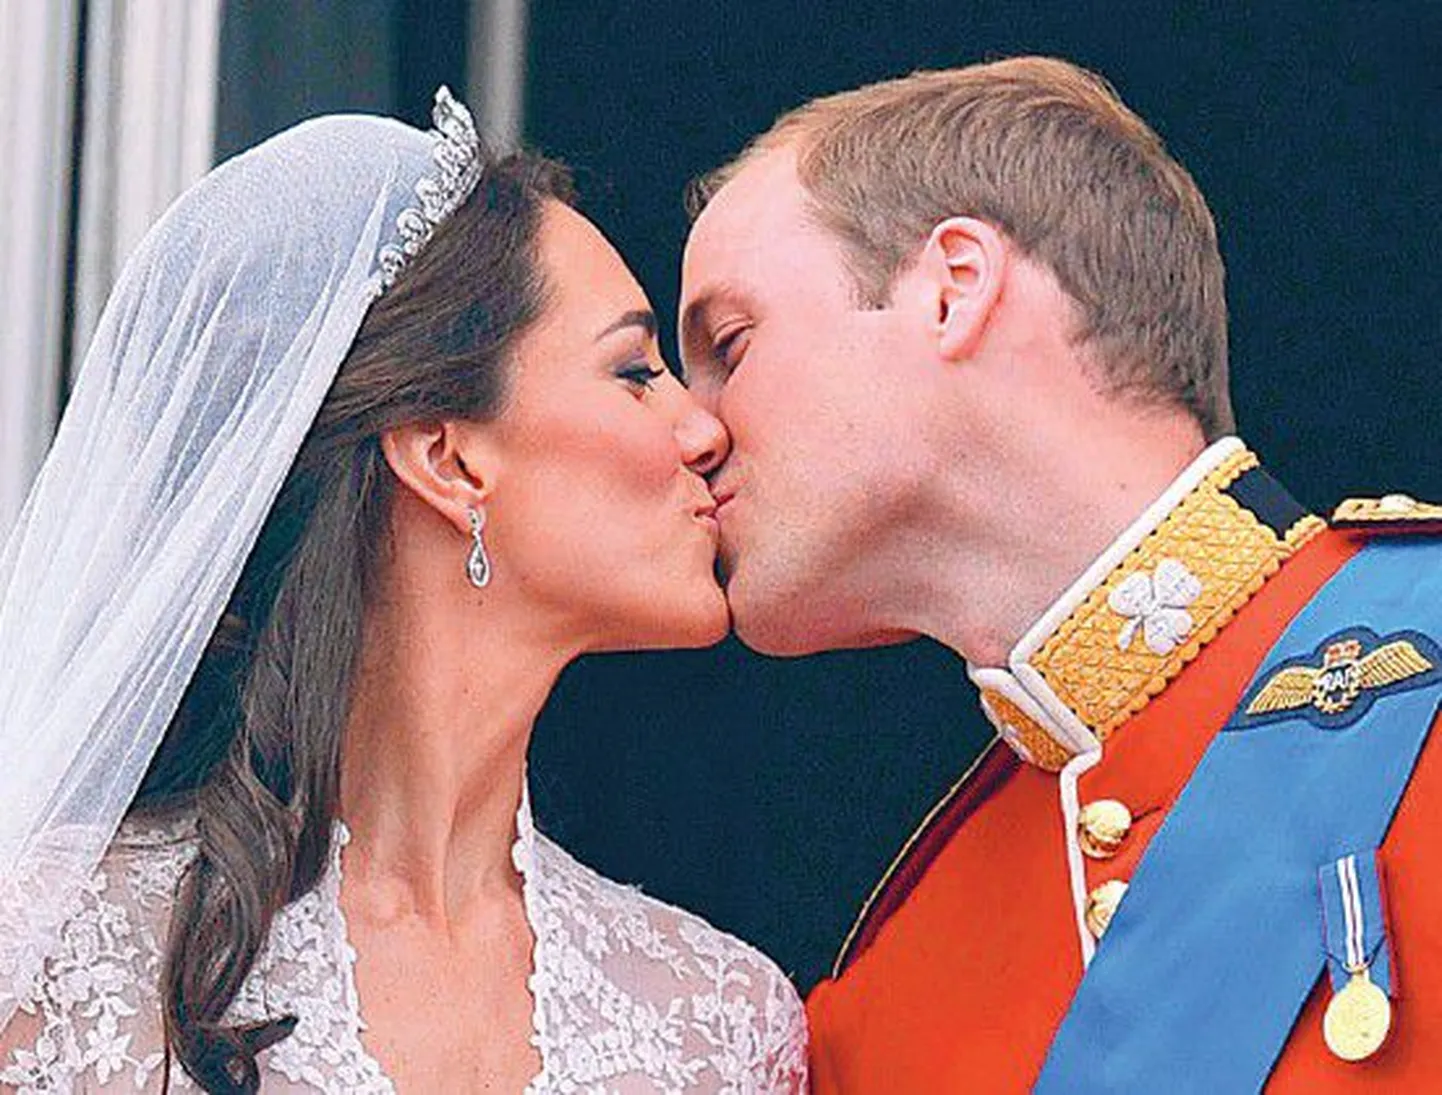 Первый супружеский поцелуй принца Уильяма и его супруги, герцогини Кембриджской, на балконе Букингемского дворца.